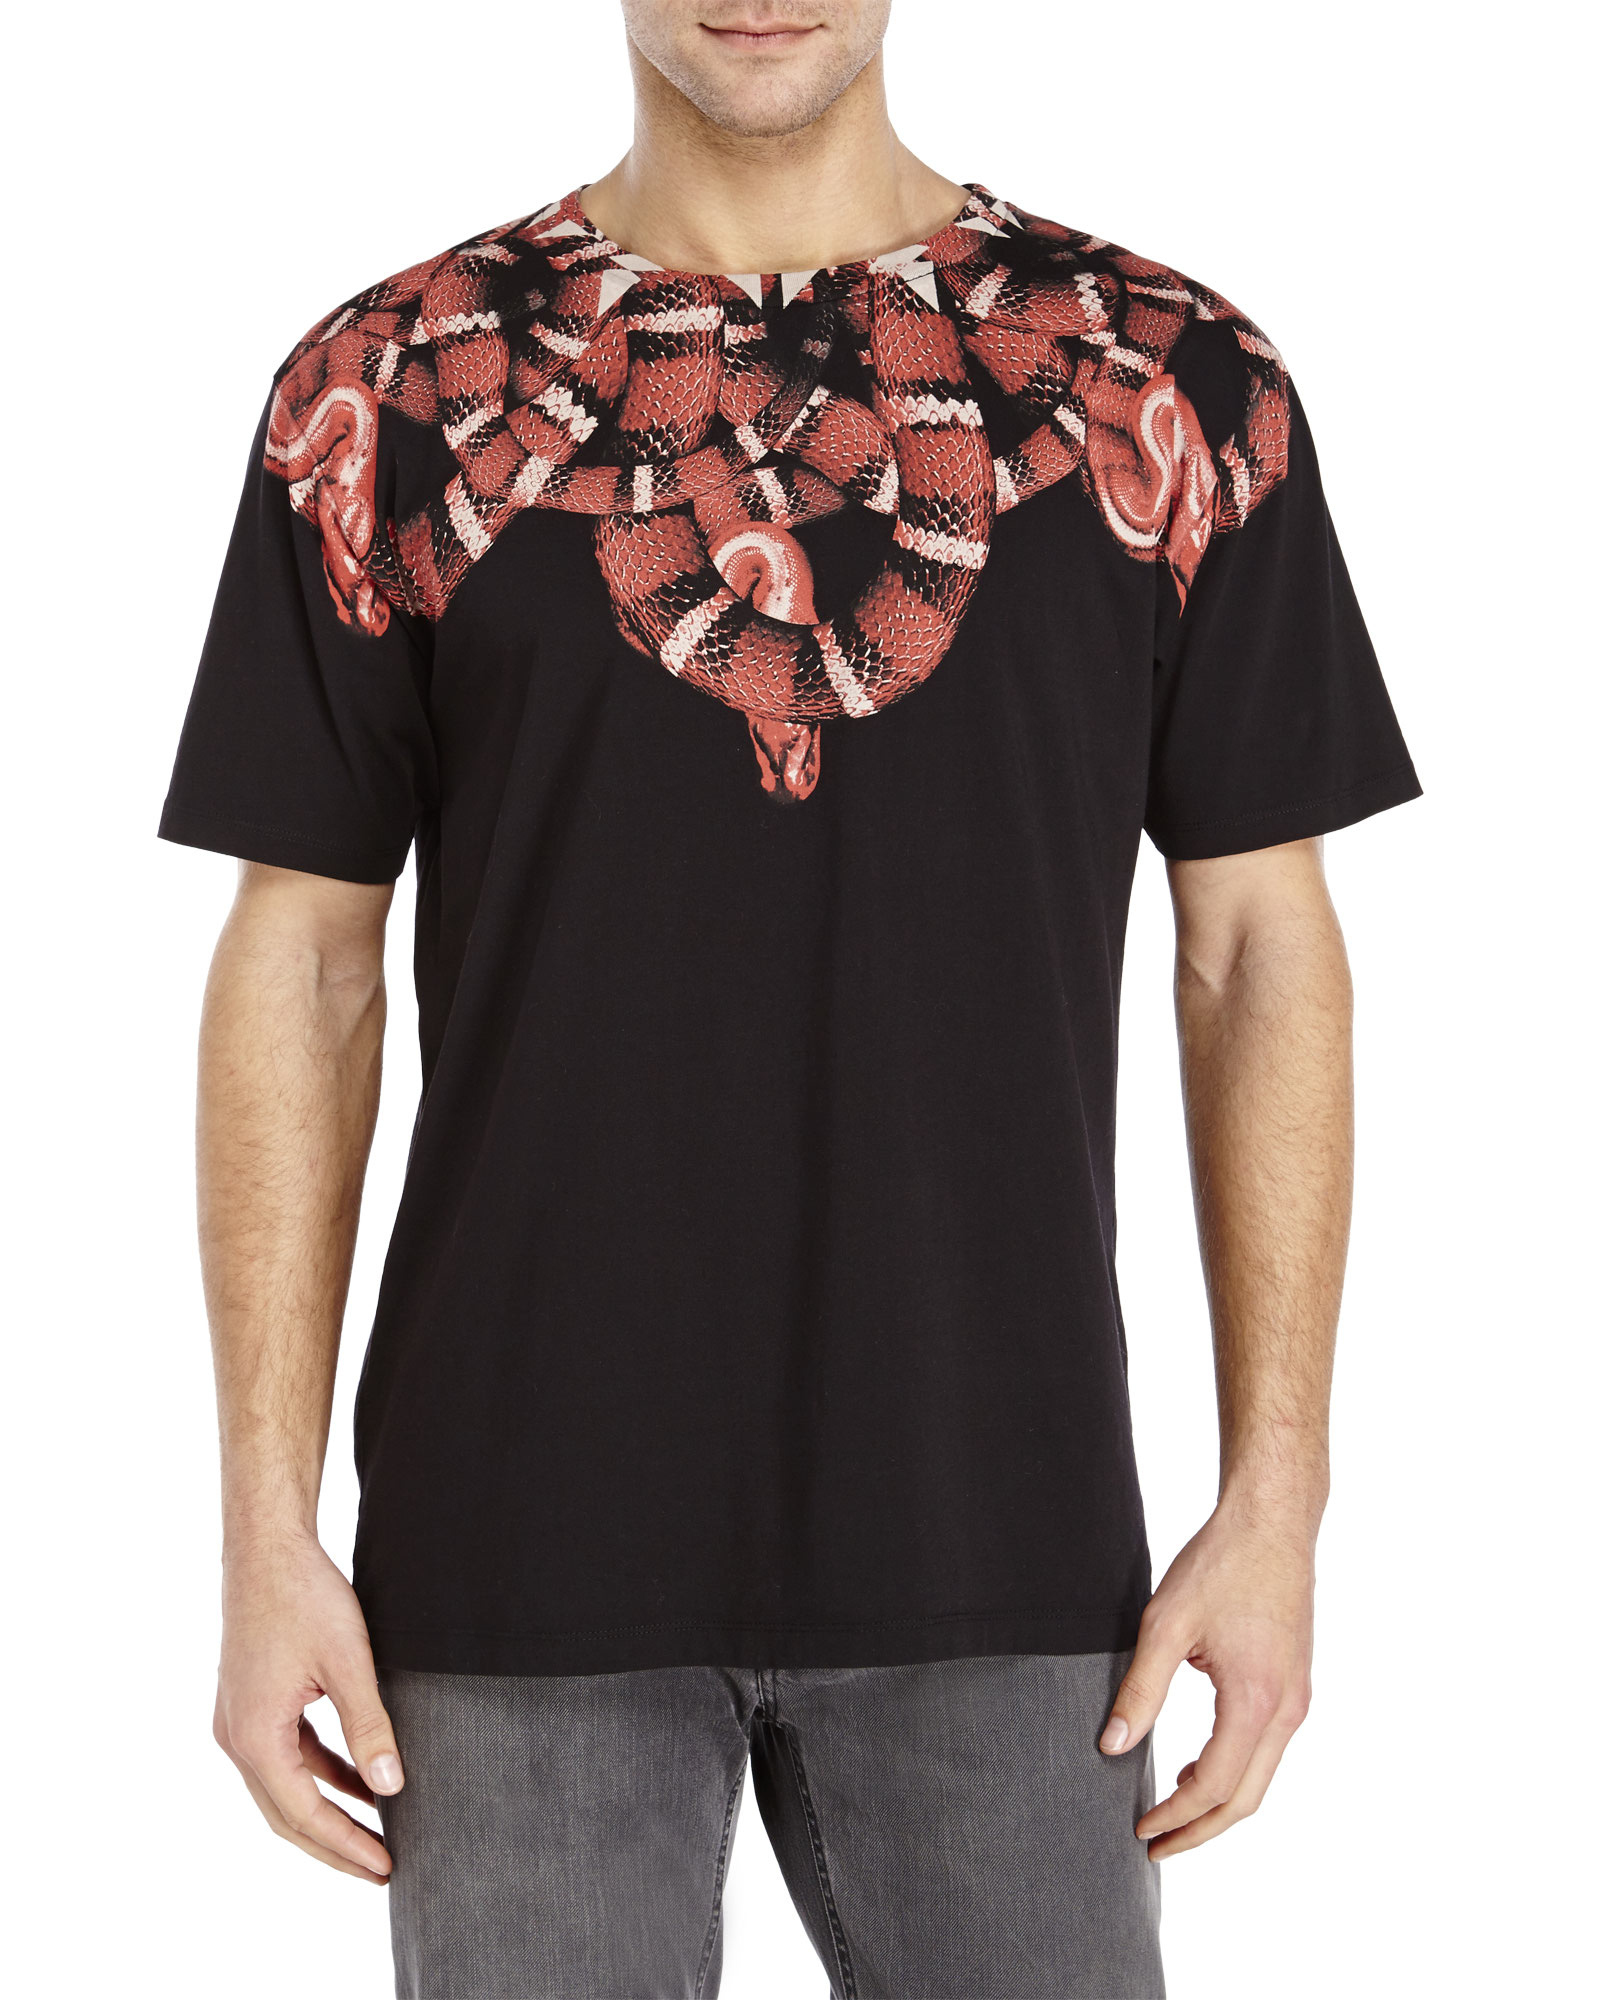 Lyst - Marcelo Burlon Moon Snake T-Shirt in Black for Men